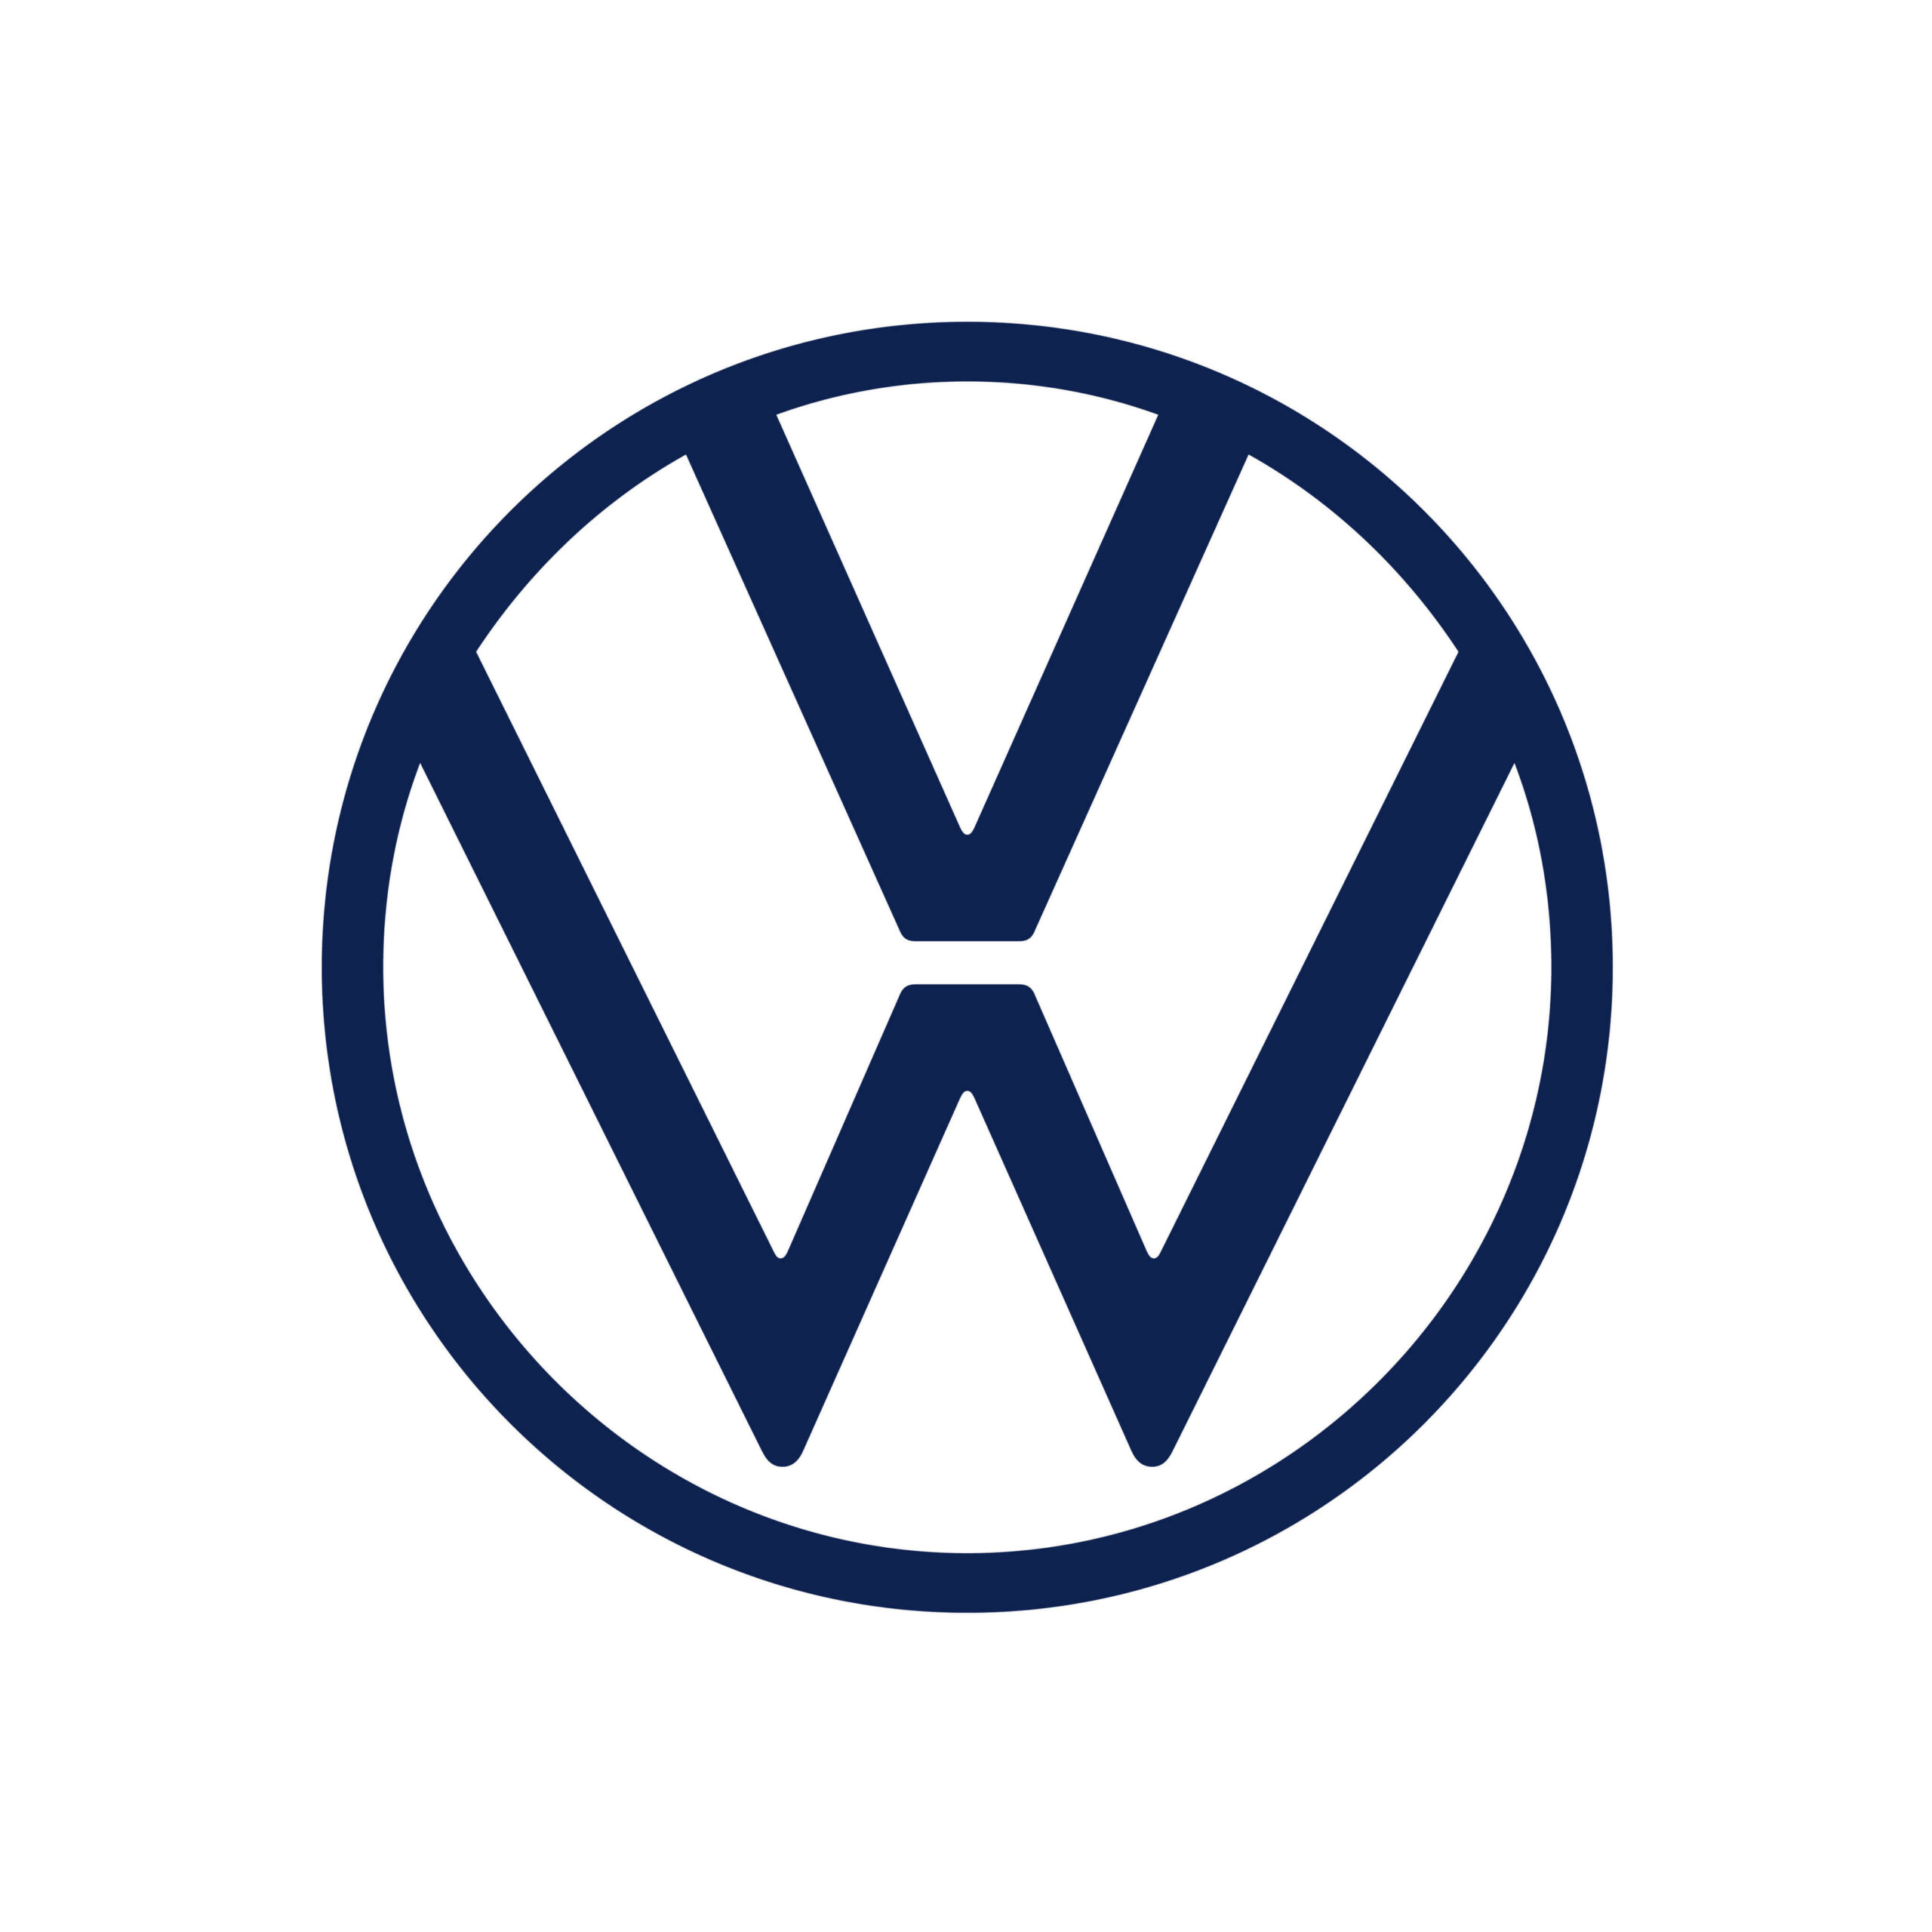 Volkswagen of Ontario contact form